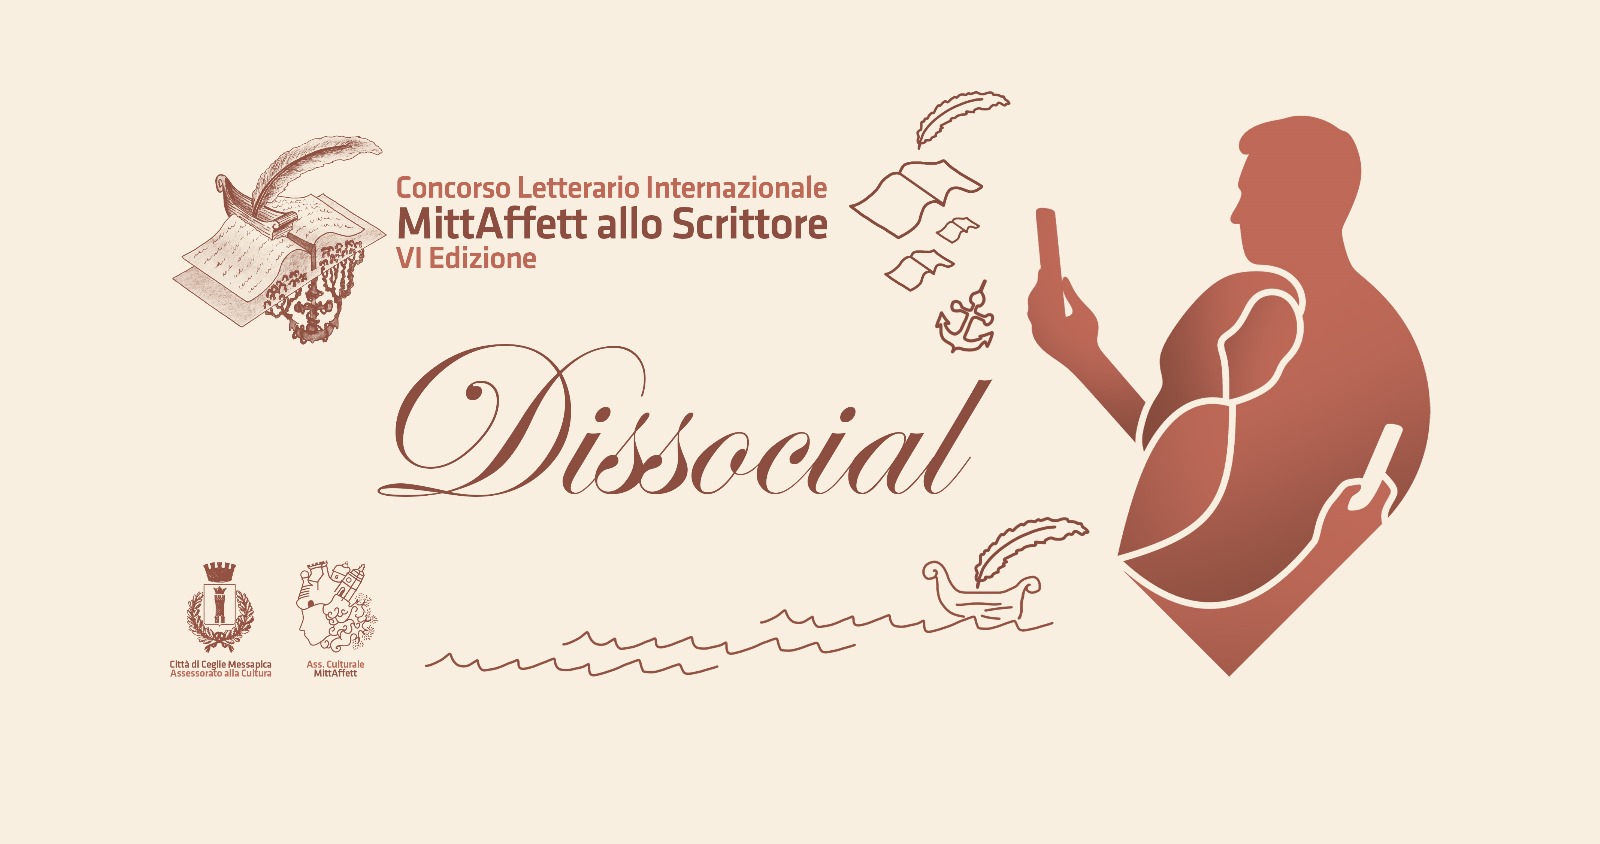 "Dissocial" – MittAffett allo Scrittore, Concorso Letterario Internazionale di Narrativa e Poesia